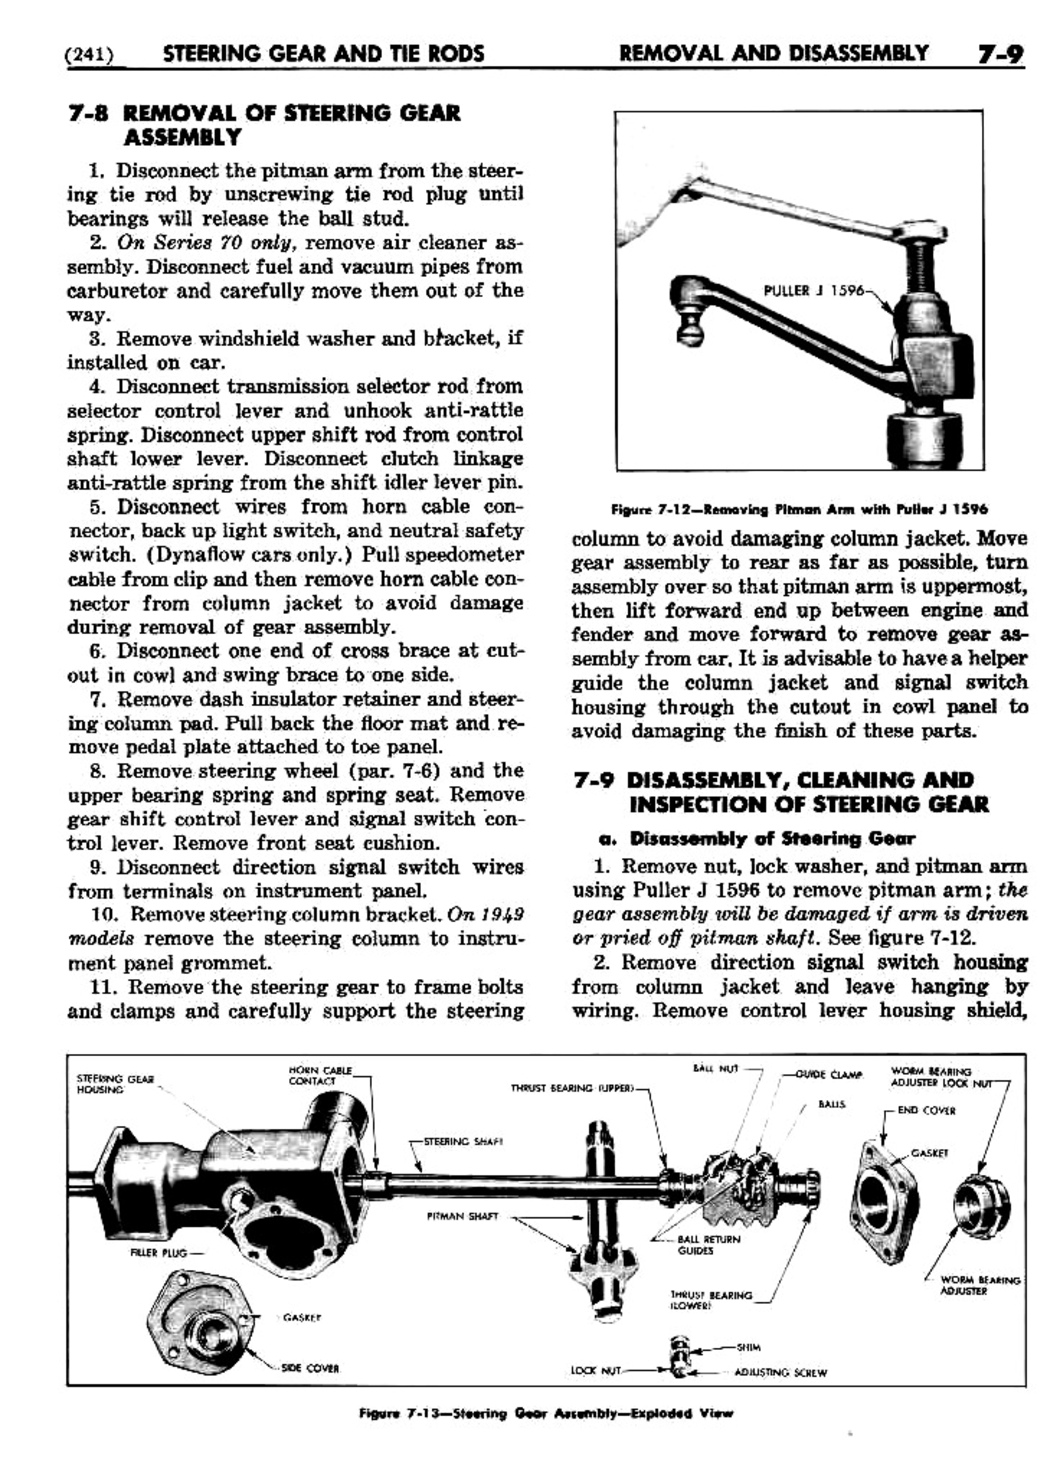 n_08 1948 Buick Shop Manual - Steering-009-009.jpg